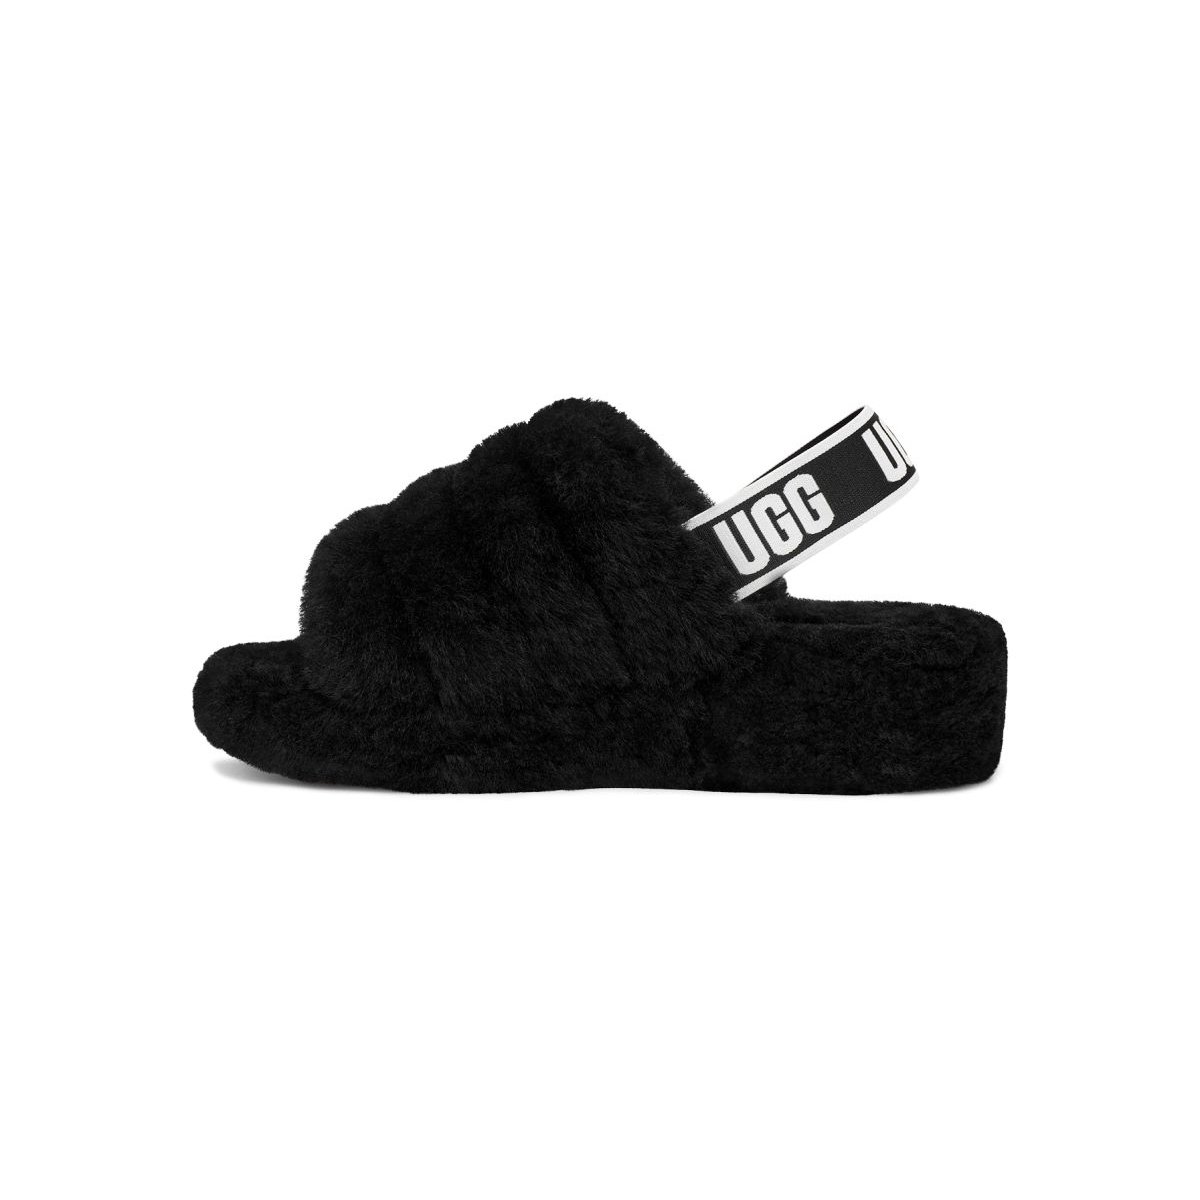 UGG Women's Fluff Yeah Slide Slipper Black - 1095119-BLK BLACK - BLACK, 7